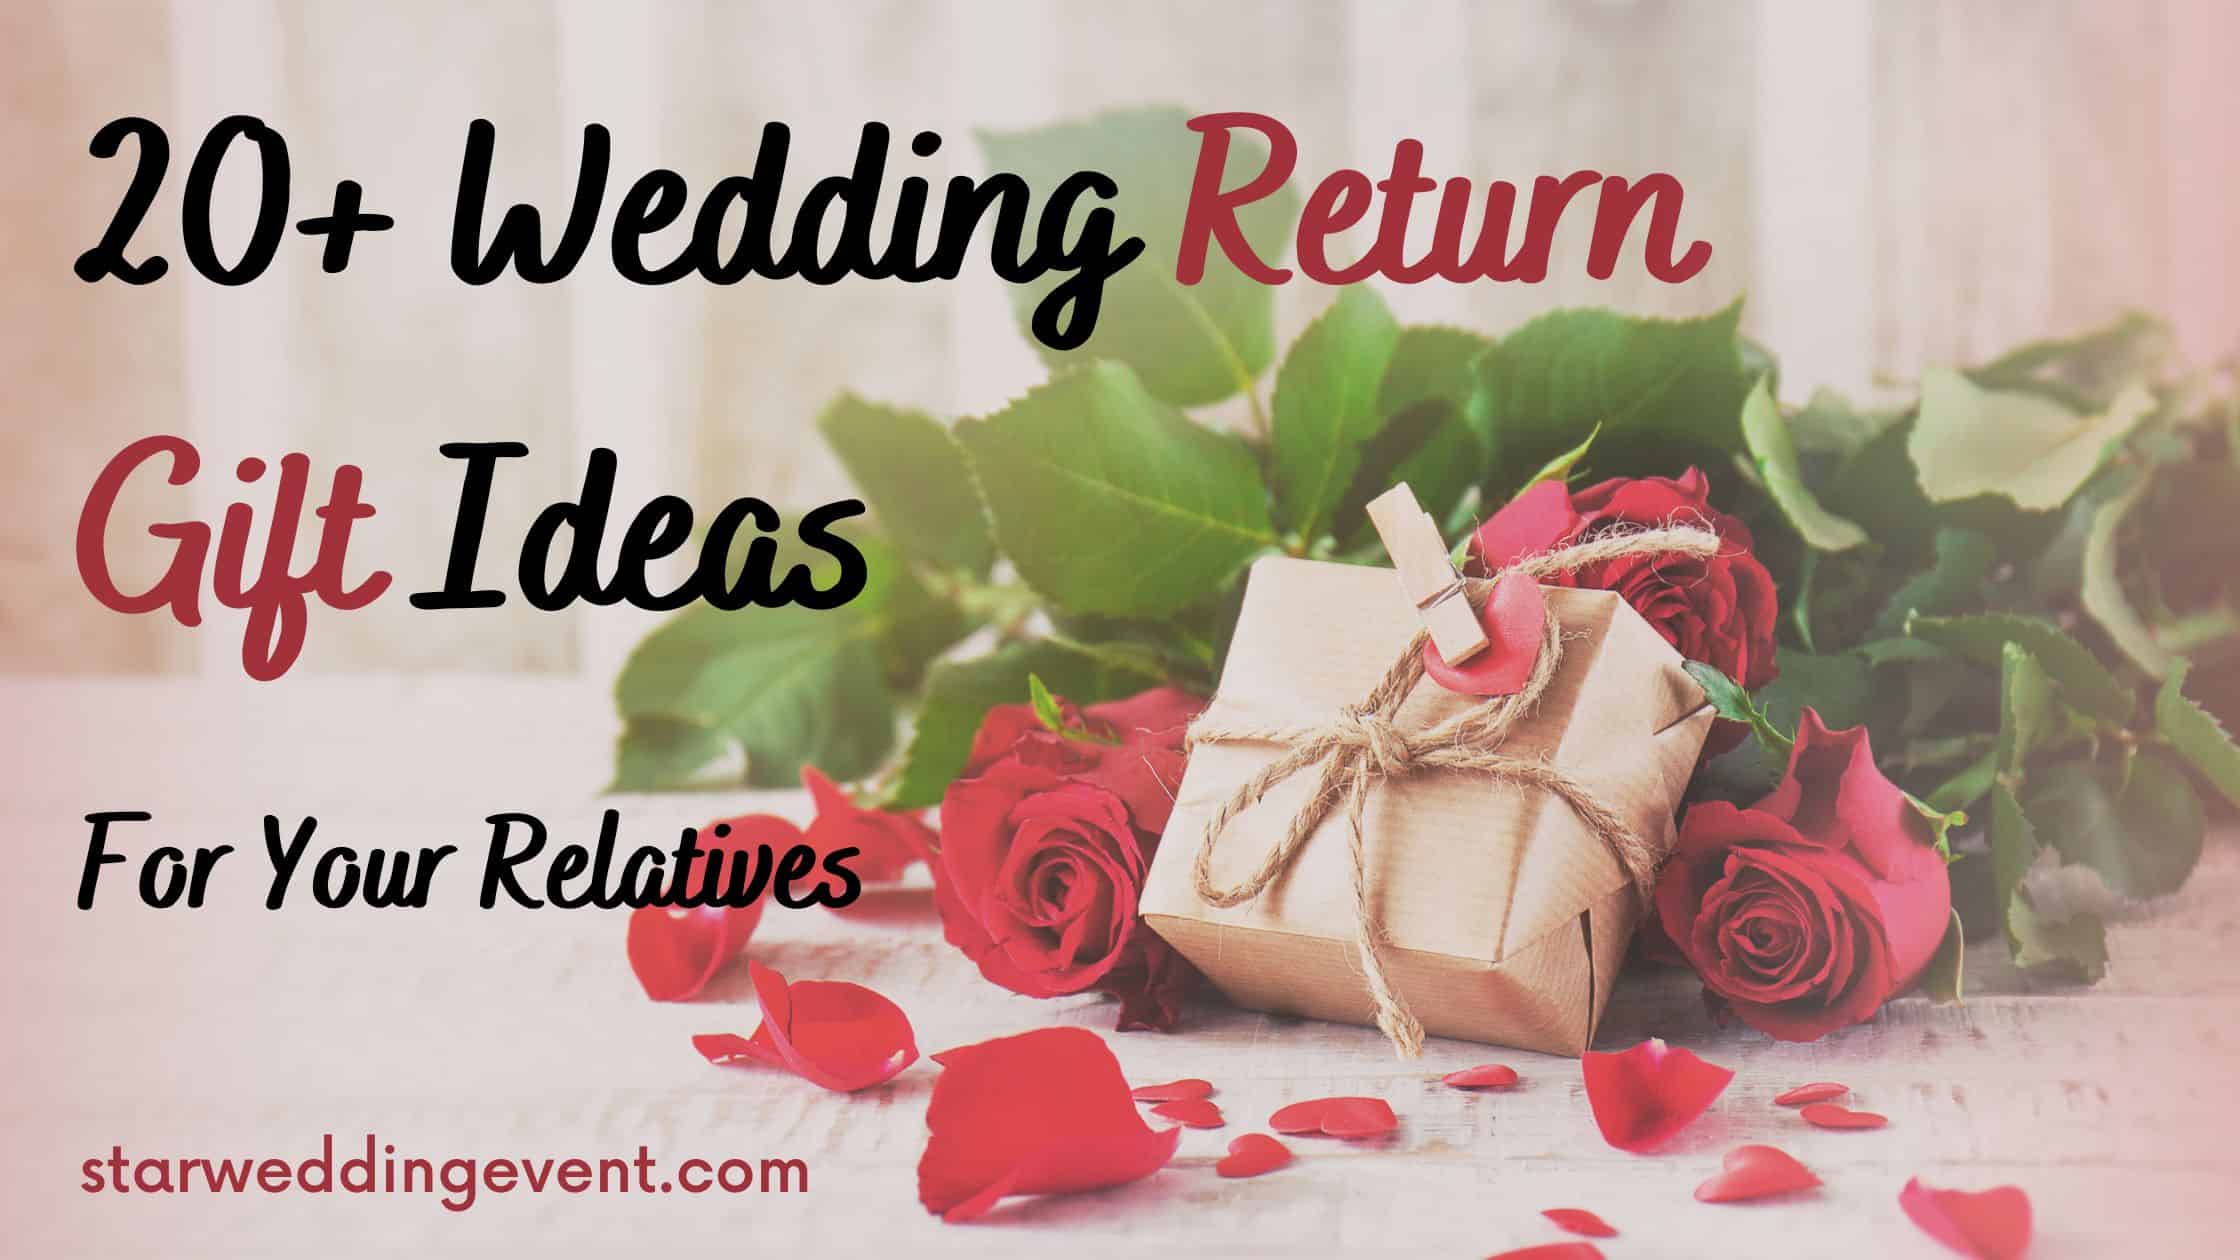 wedding return gift ideas